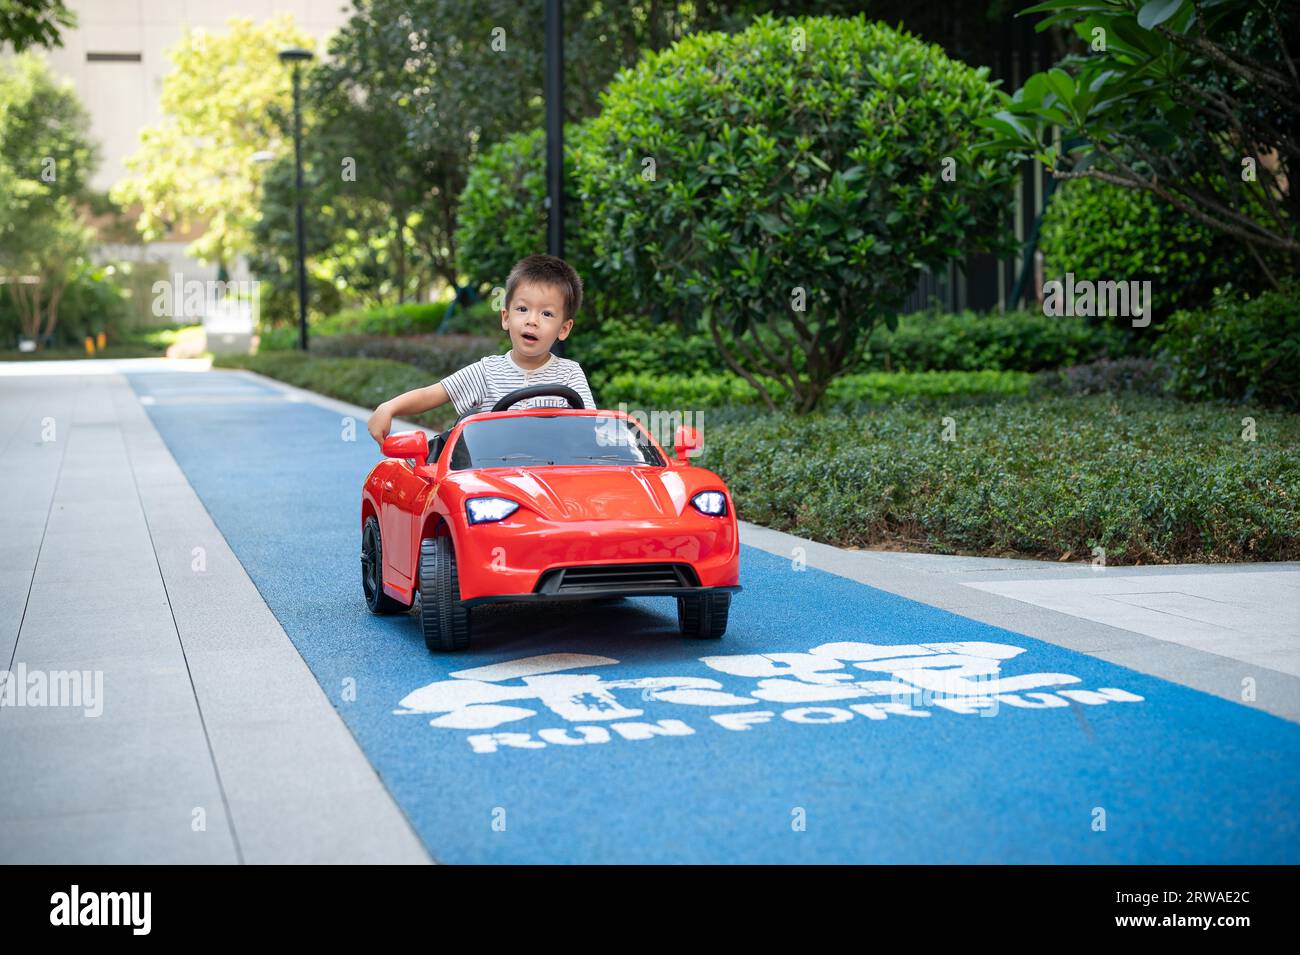 Il simpatico bambino multirazziale si guarda intorno mentre guida un'auto rossa con telecomando su una pista pavimentata Foto Stock